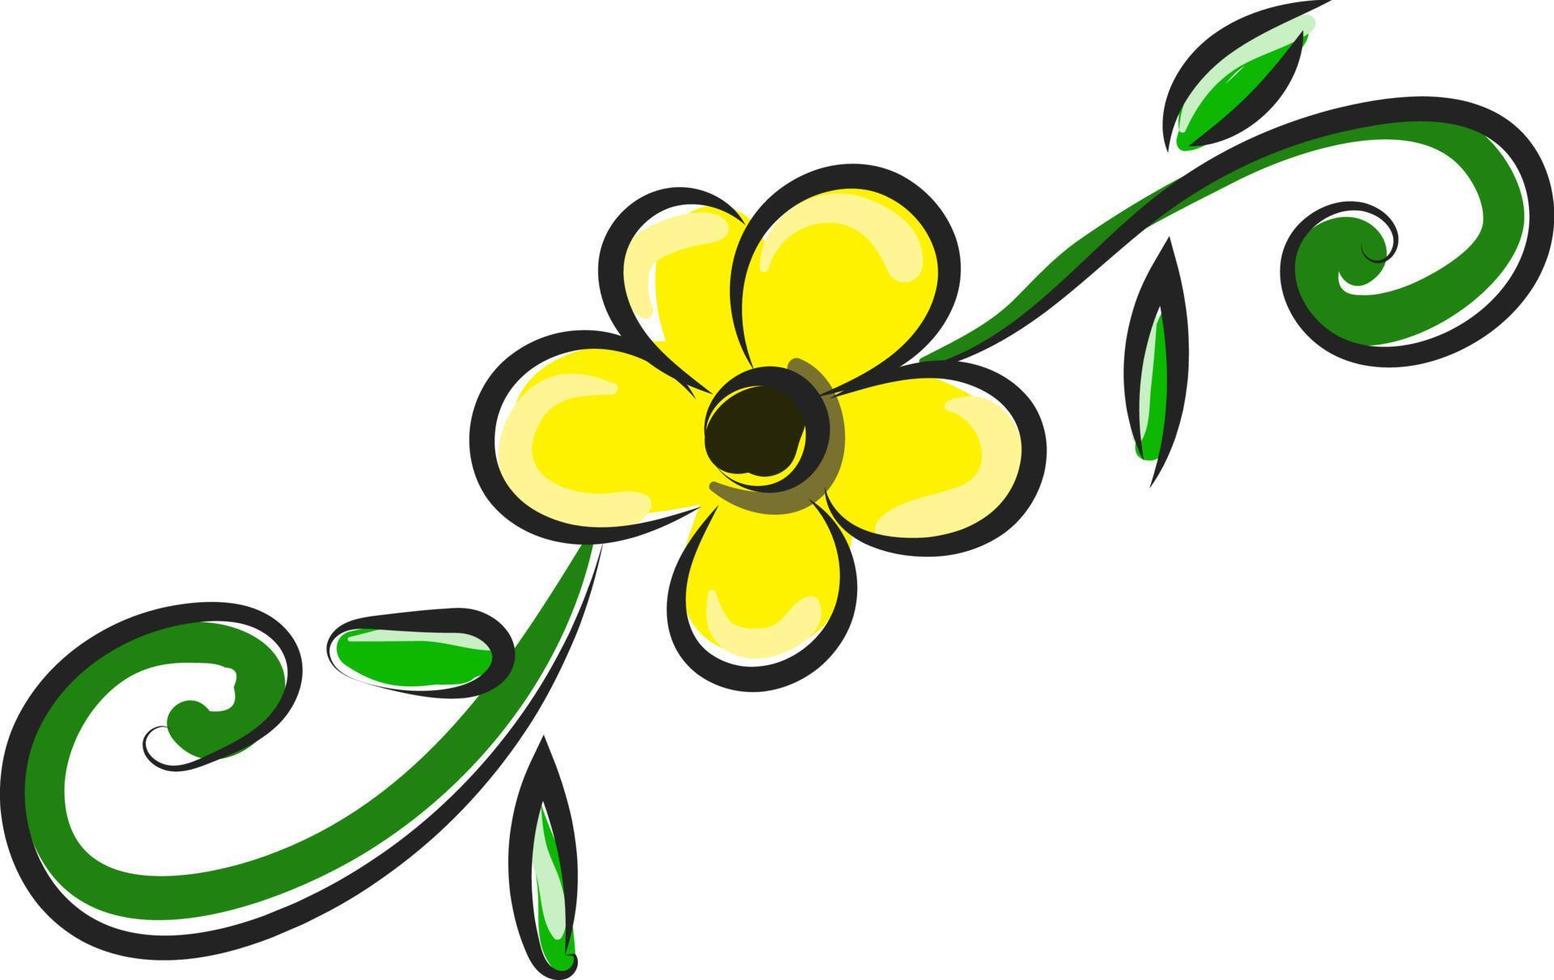 gelbe Blume, Illustration, Vektor auf weißem Hintergrund.